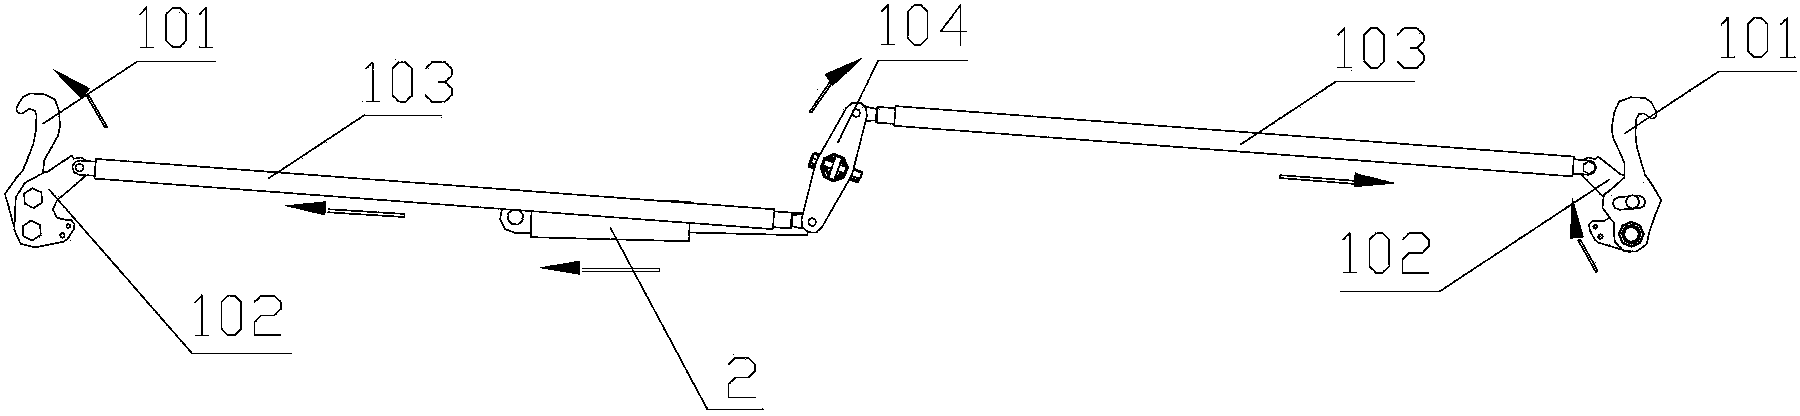 Airplane cargo bridge door locking mechanism